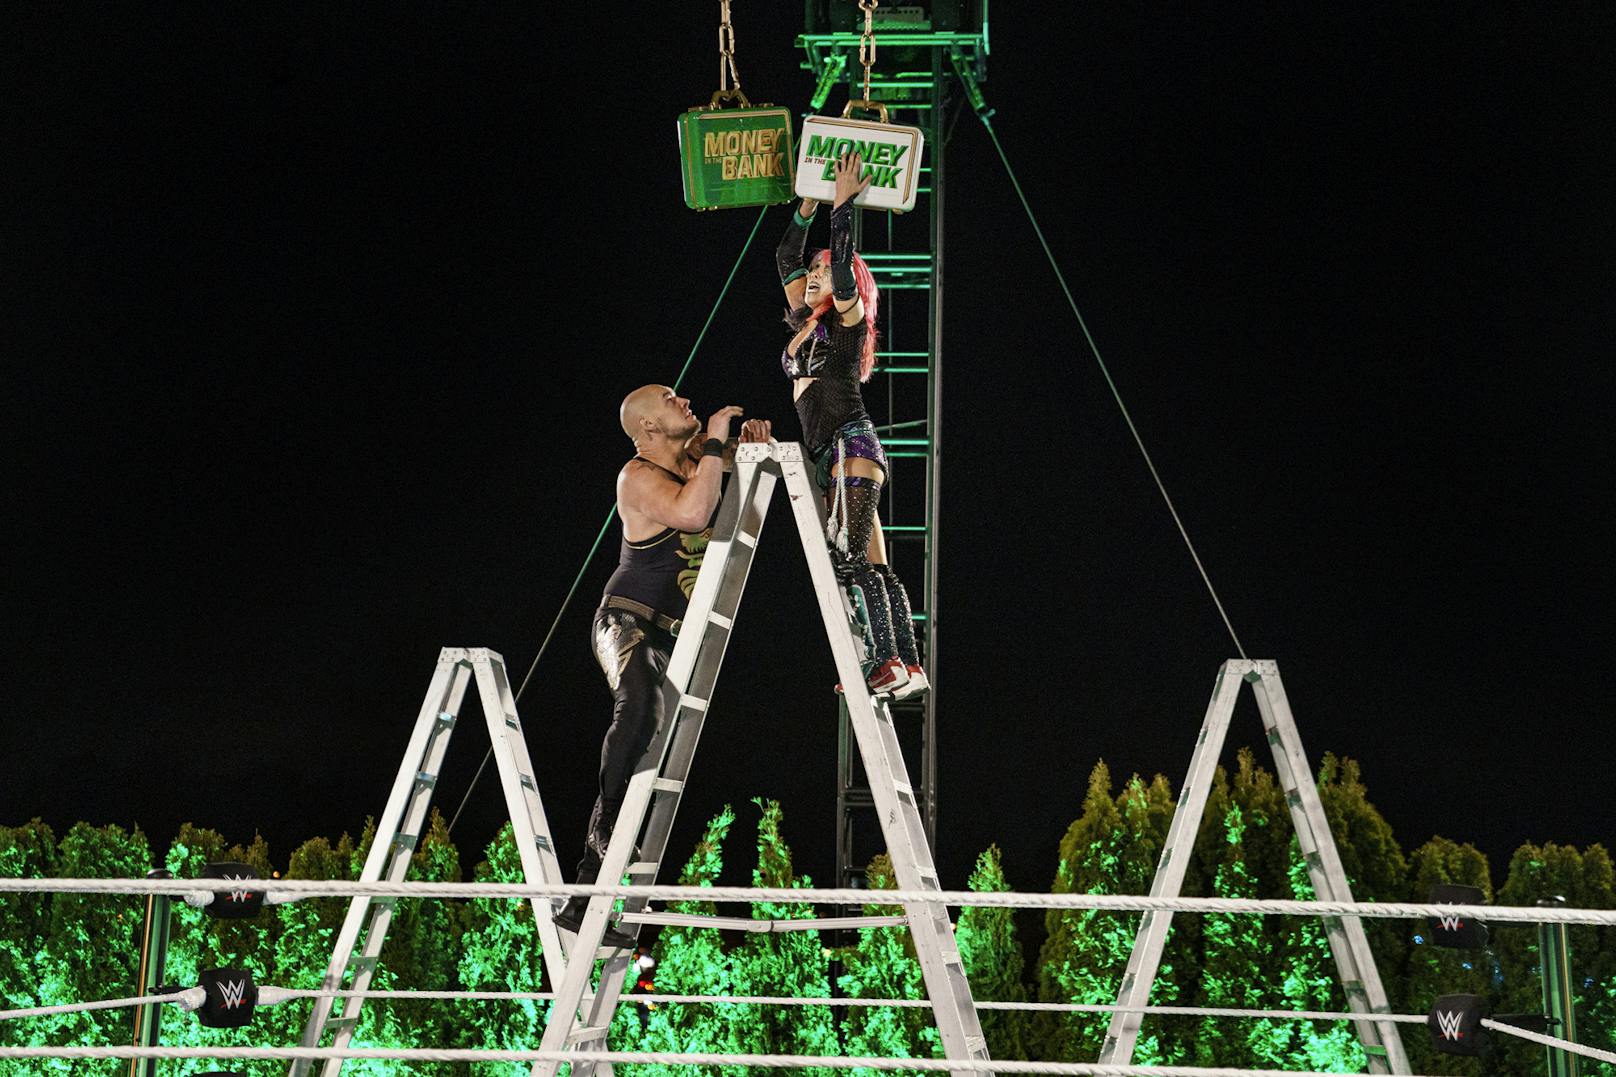 WWE Money in the Bank: Die besten Bilder